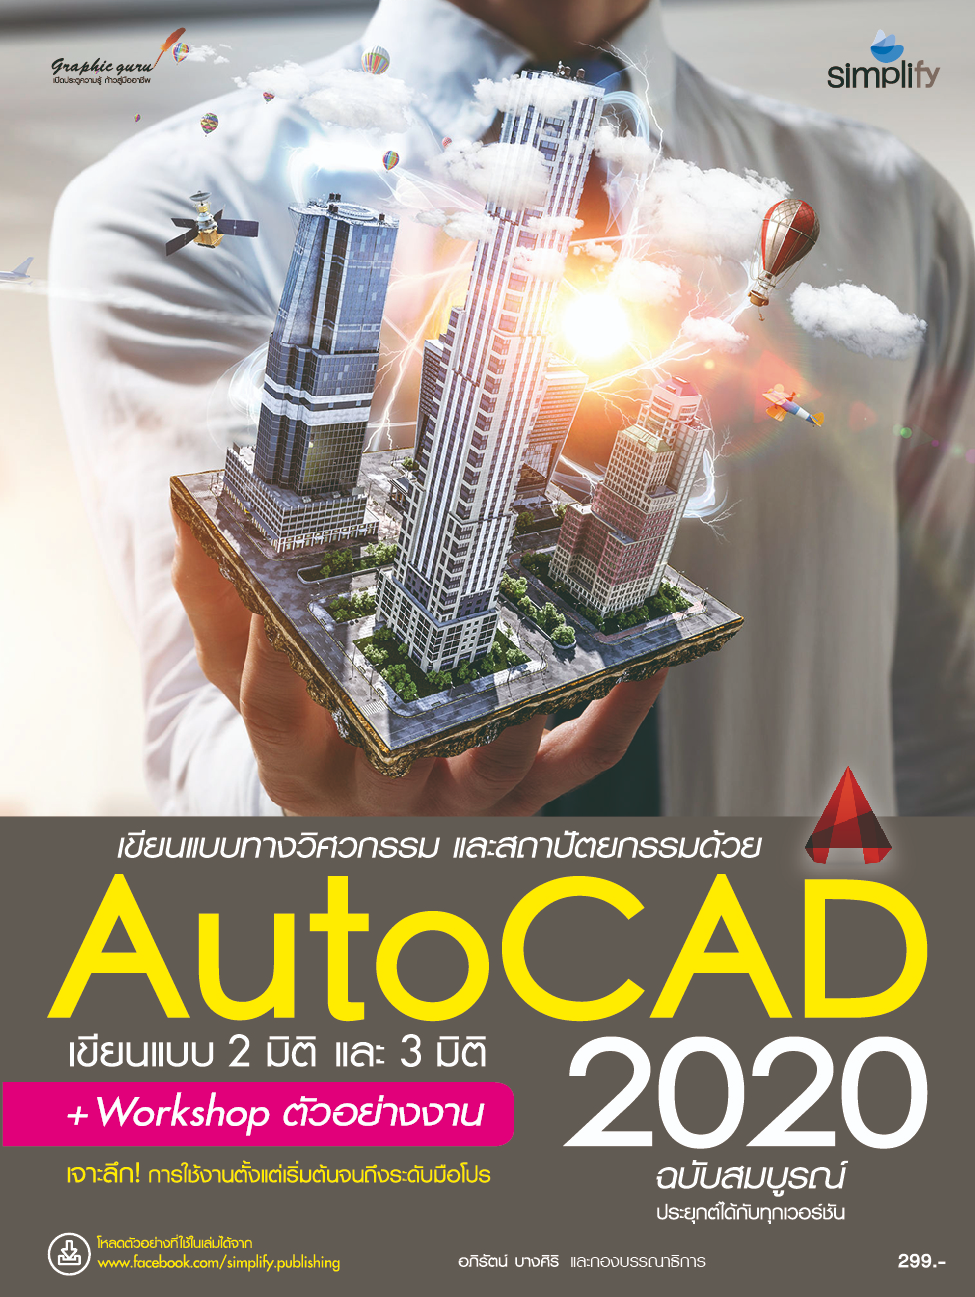 AutoCAD 2020 ฉบับสมบูรณ์ เขียนแบบทางวิศวกรรม และสถาปัตยกรรม